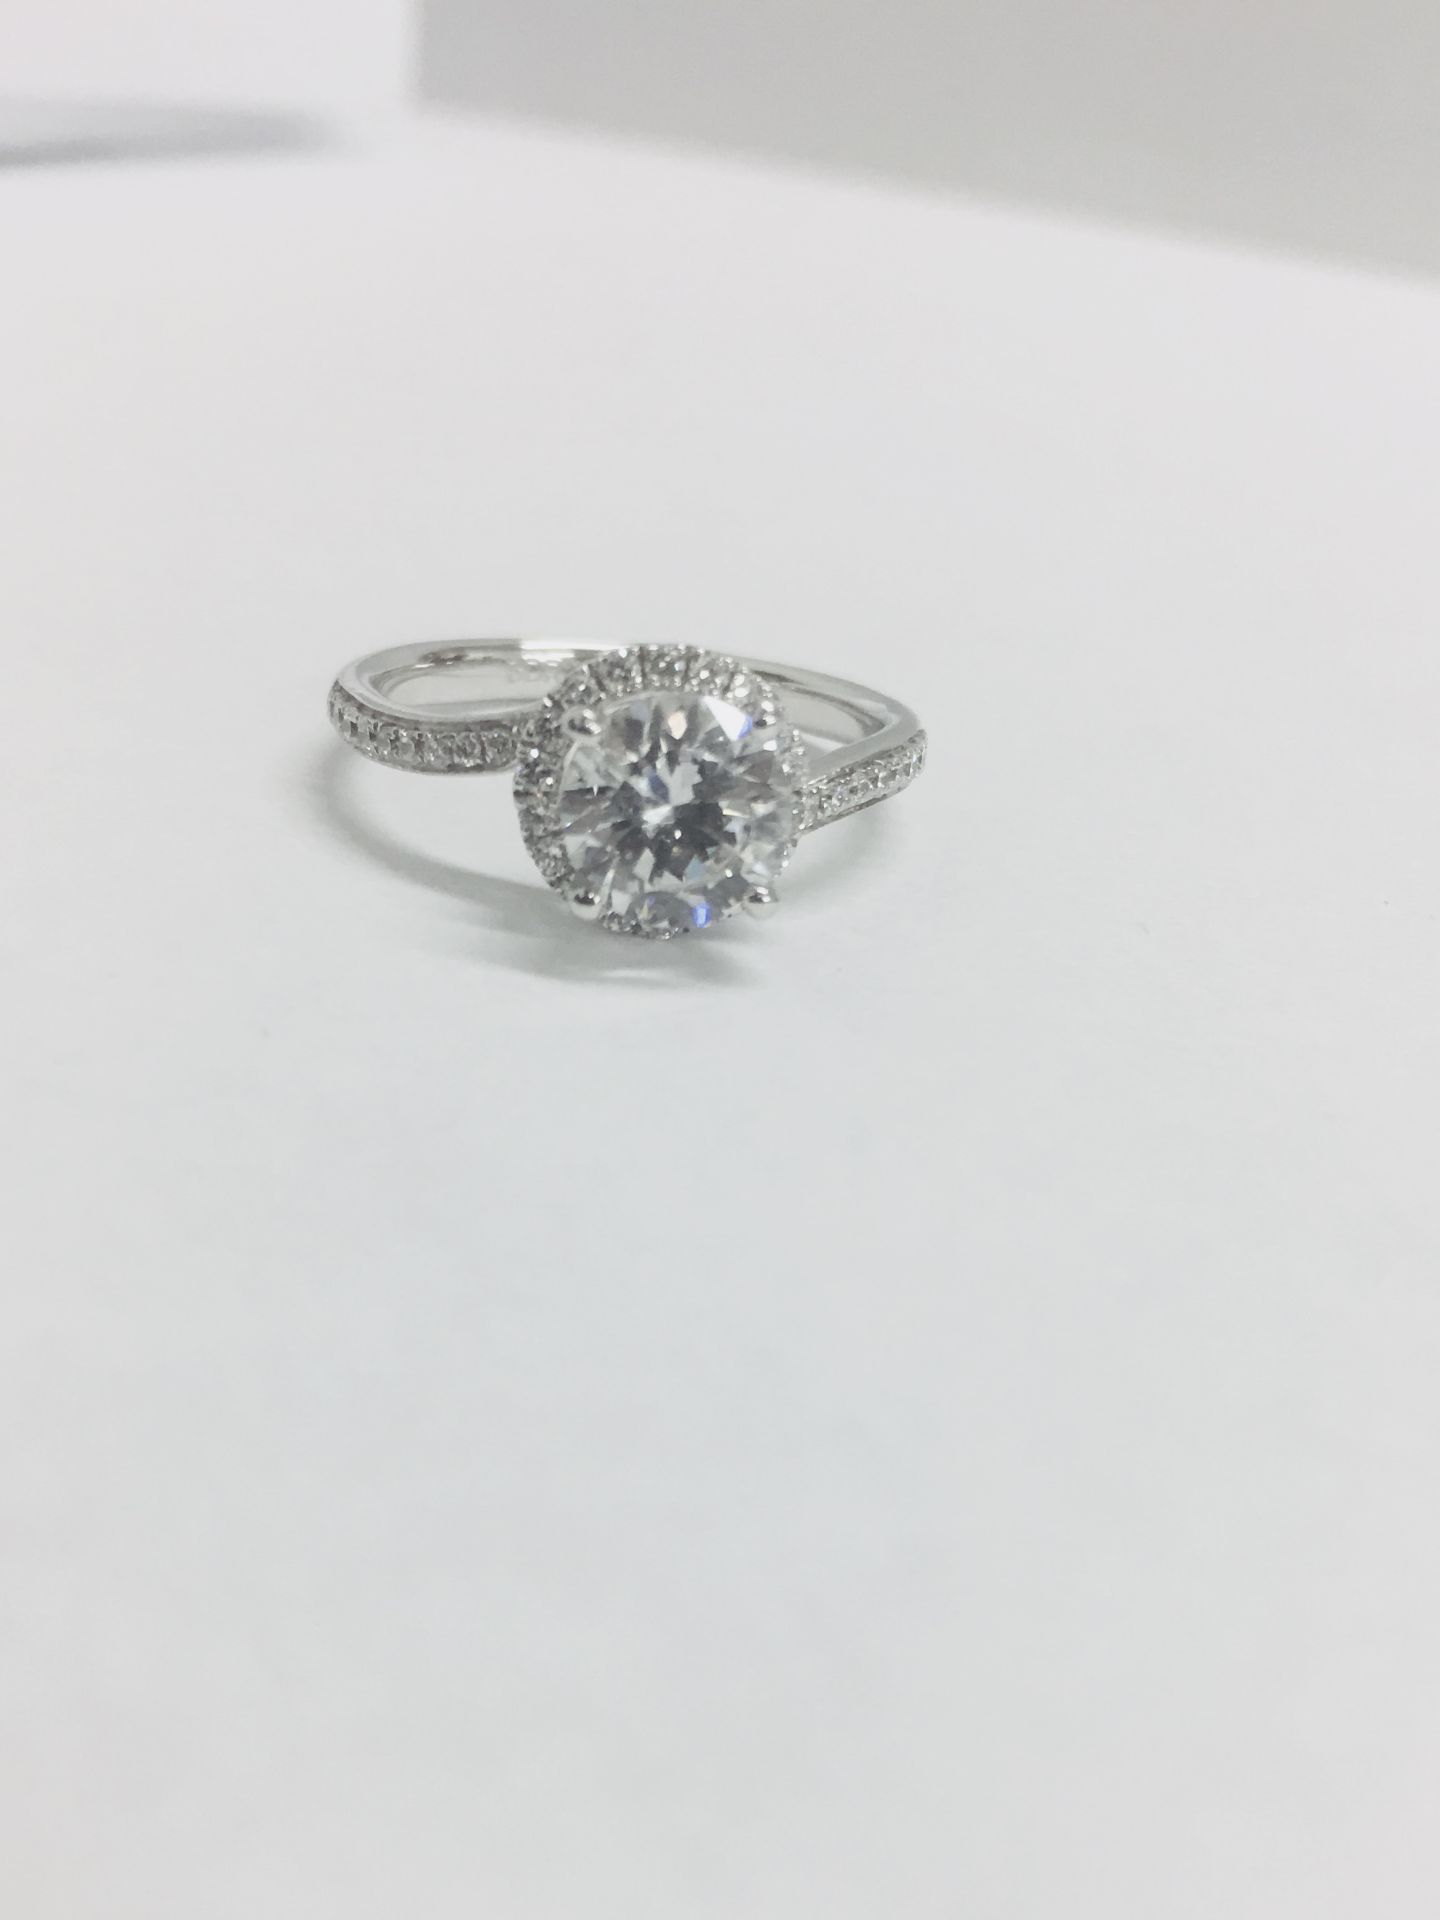 Platinum diamond solitaire ring,0.50ct brilliant cut diamond h colour vs clarity, - Image 2 of 6